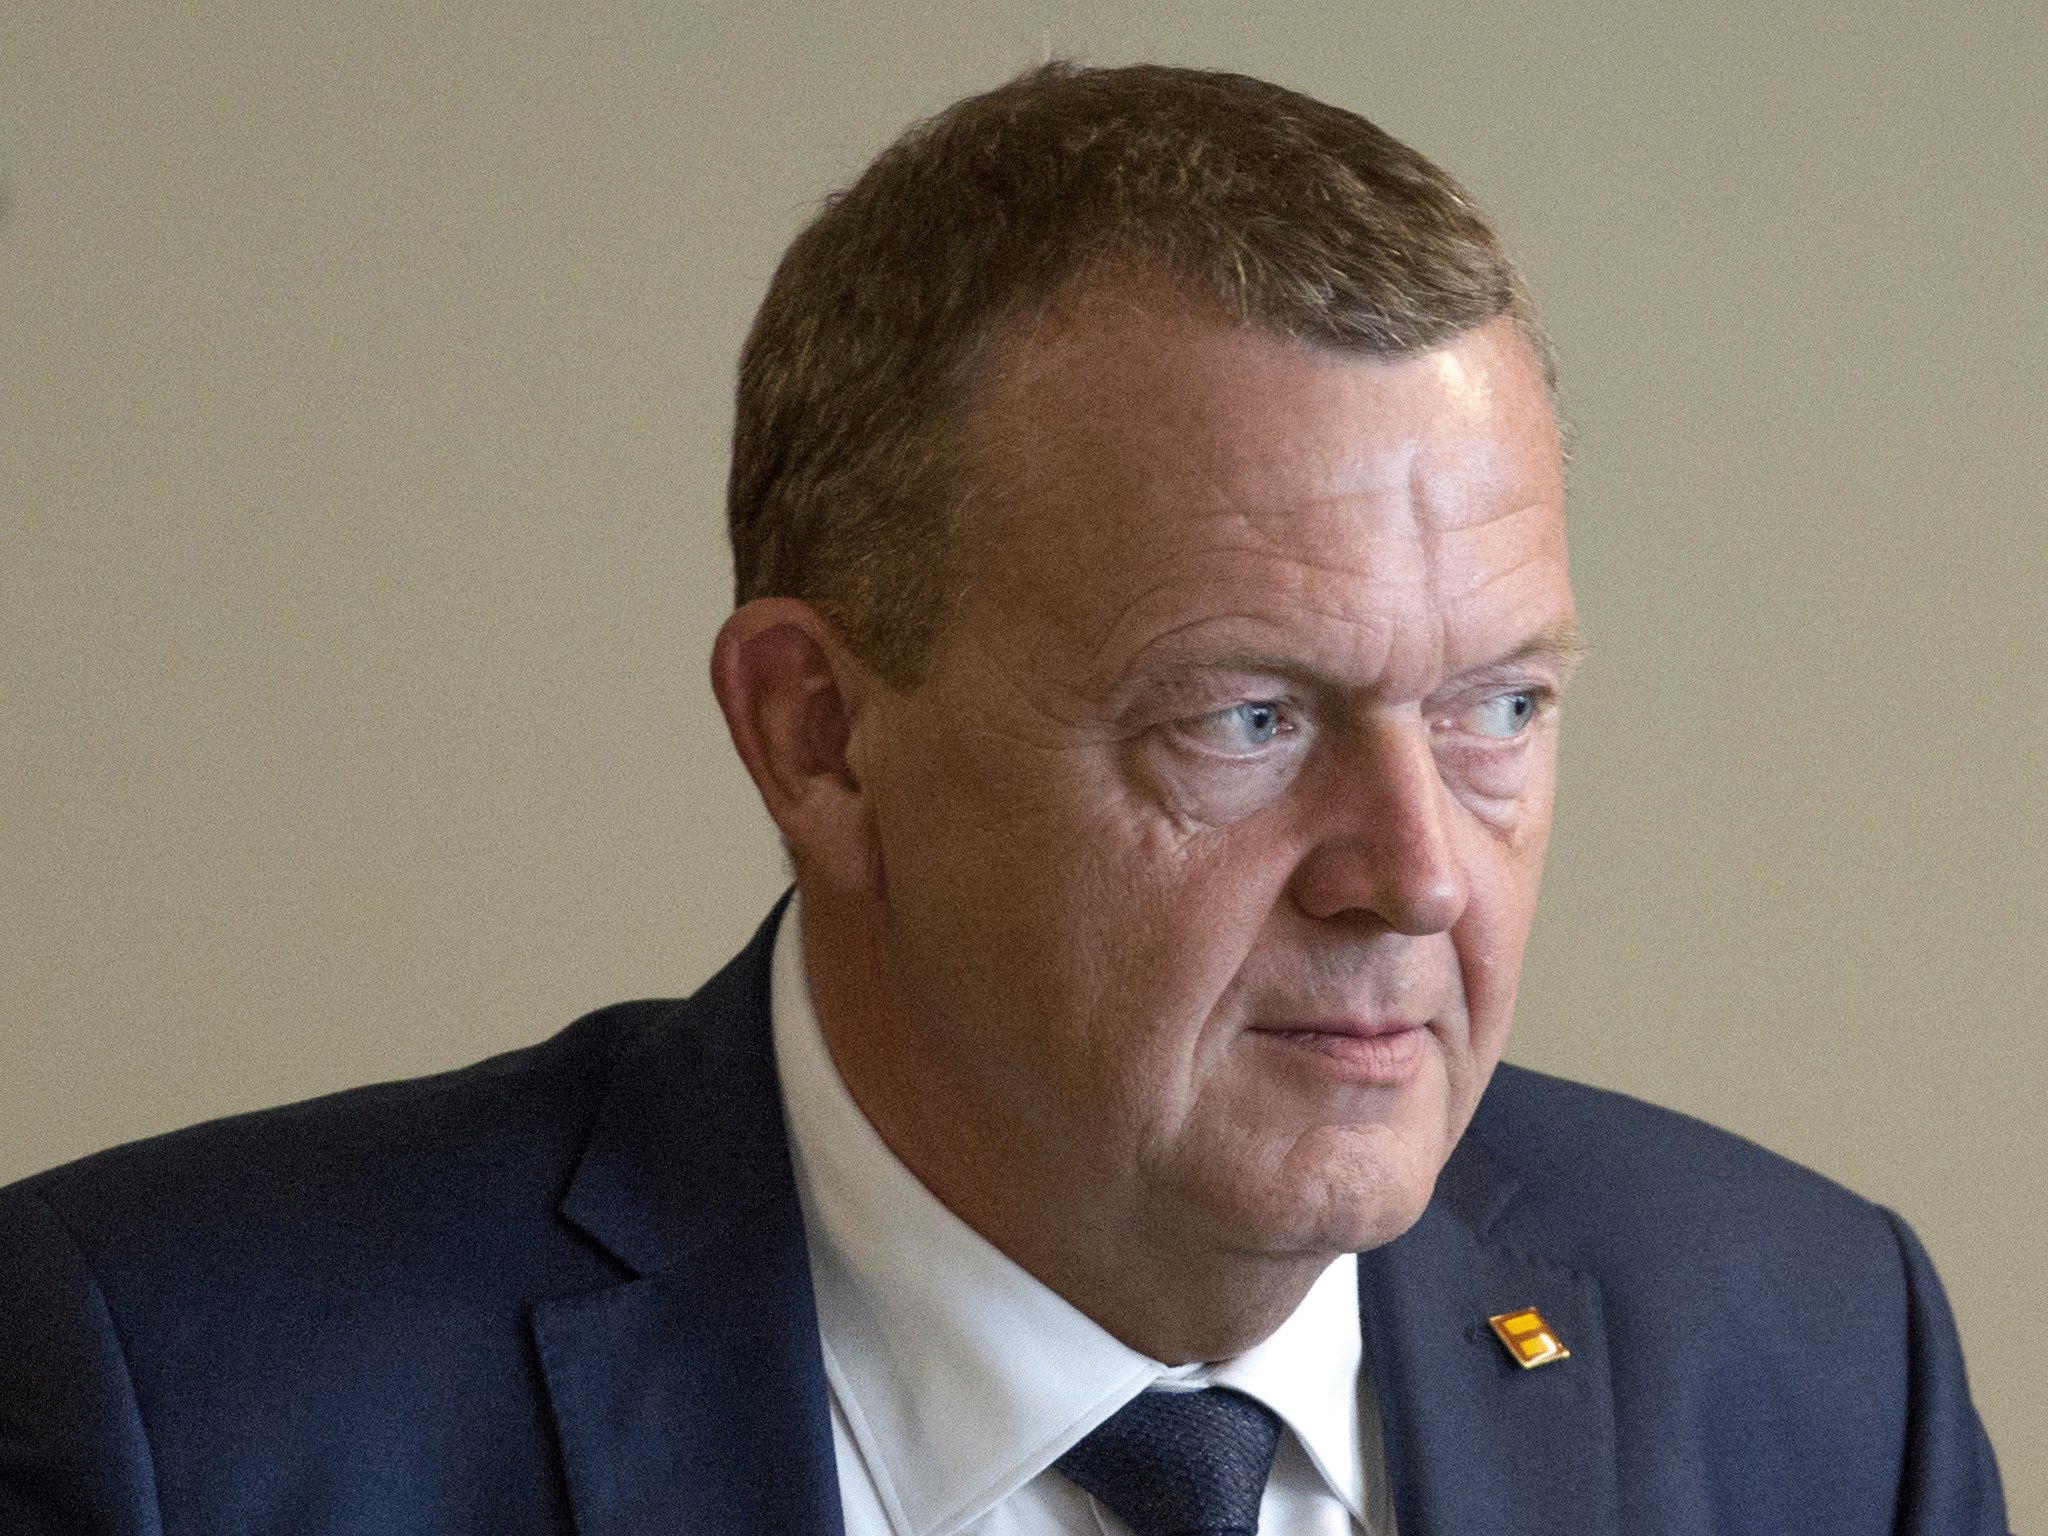 Lars Lokke Rasmussen